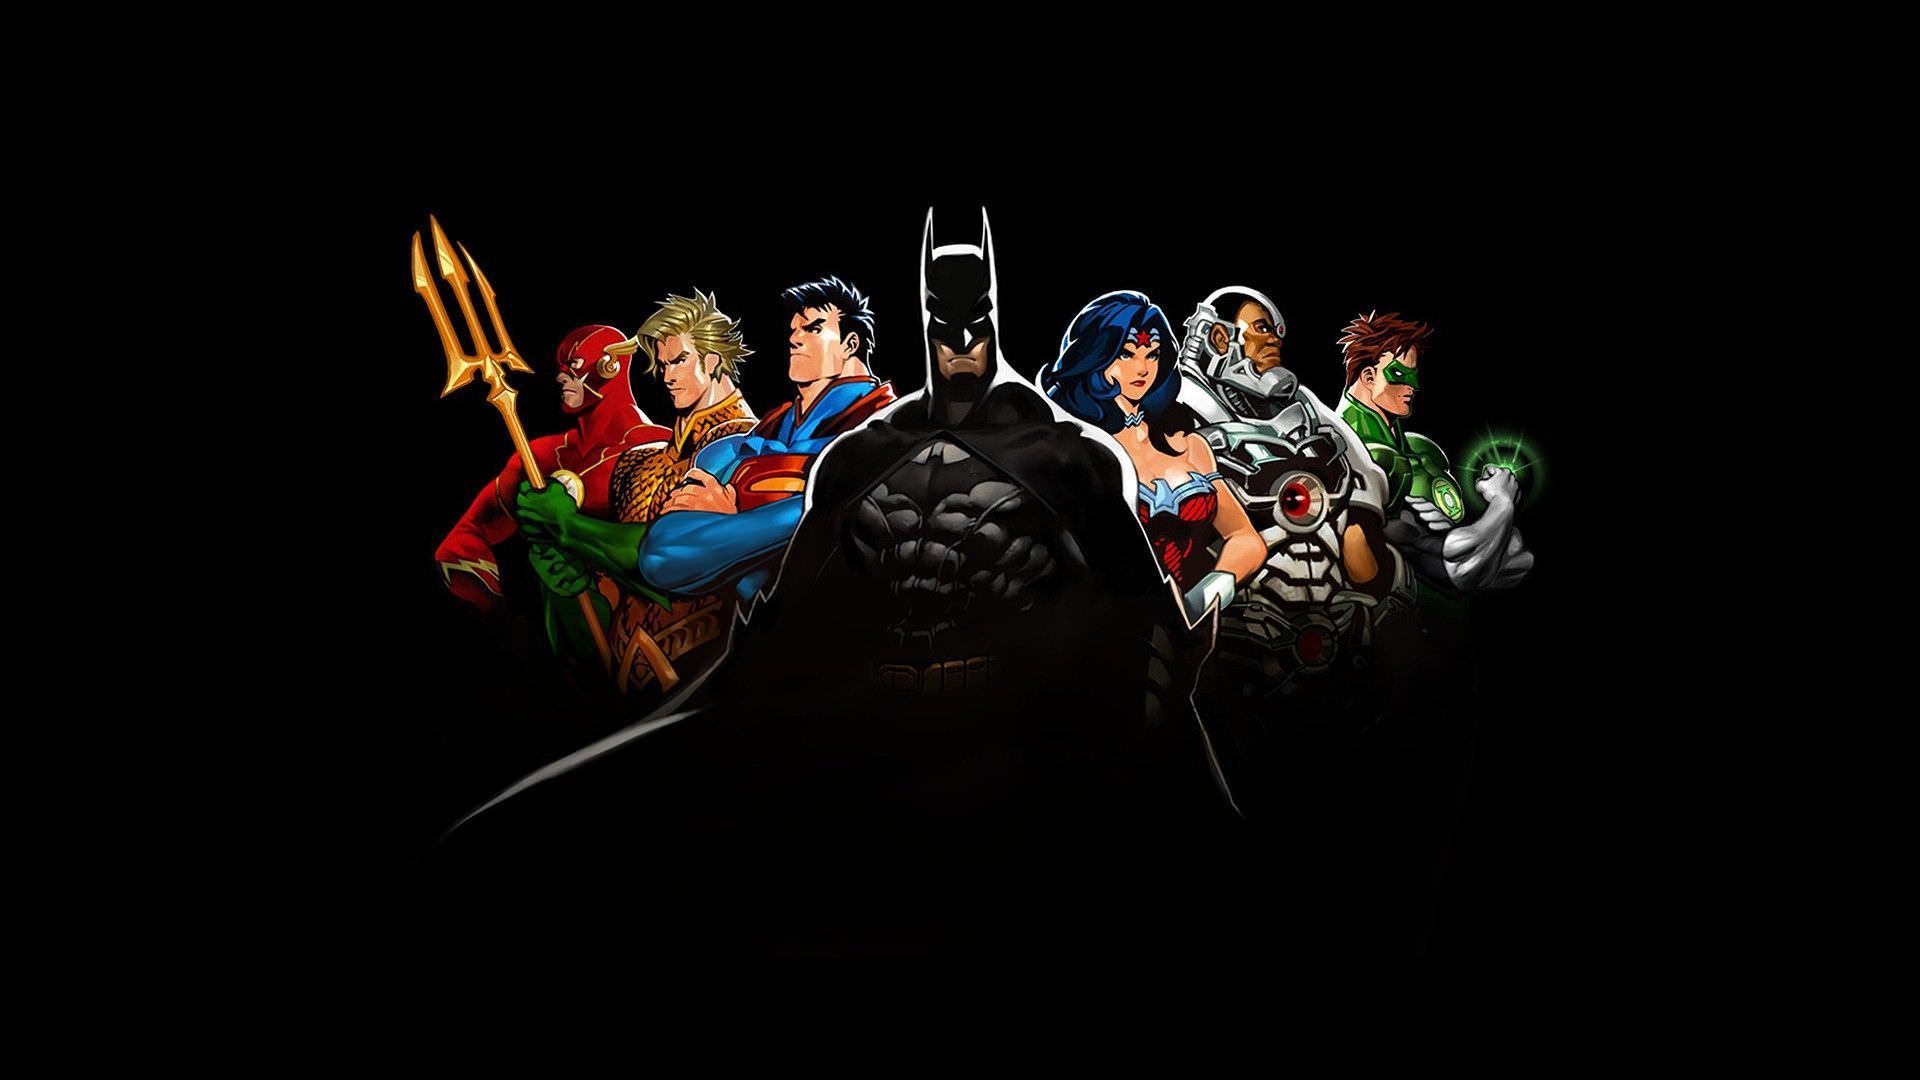 Скачать обои бесплатно Комиксы, Бэтмен, Супермен, Зелёный Фонарь, Аквамен, Чудо Женщина, Киборг (Комиксы Dc), Флеш, Лига Справедливости картинка на рабочий стол ПК